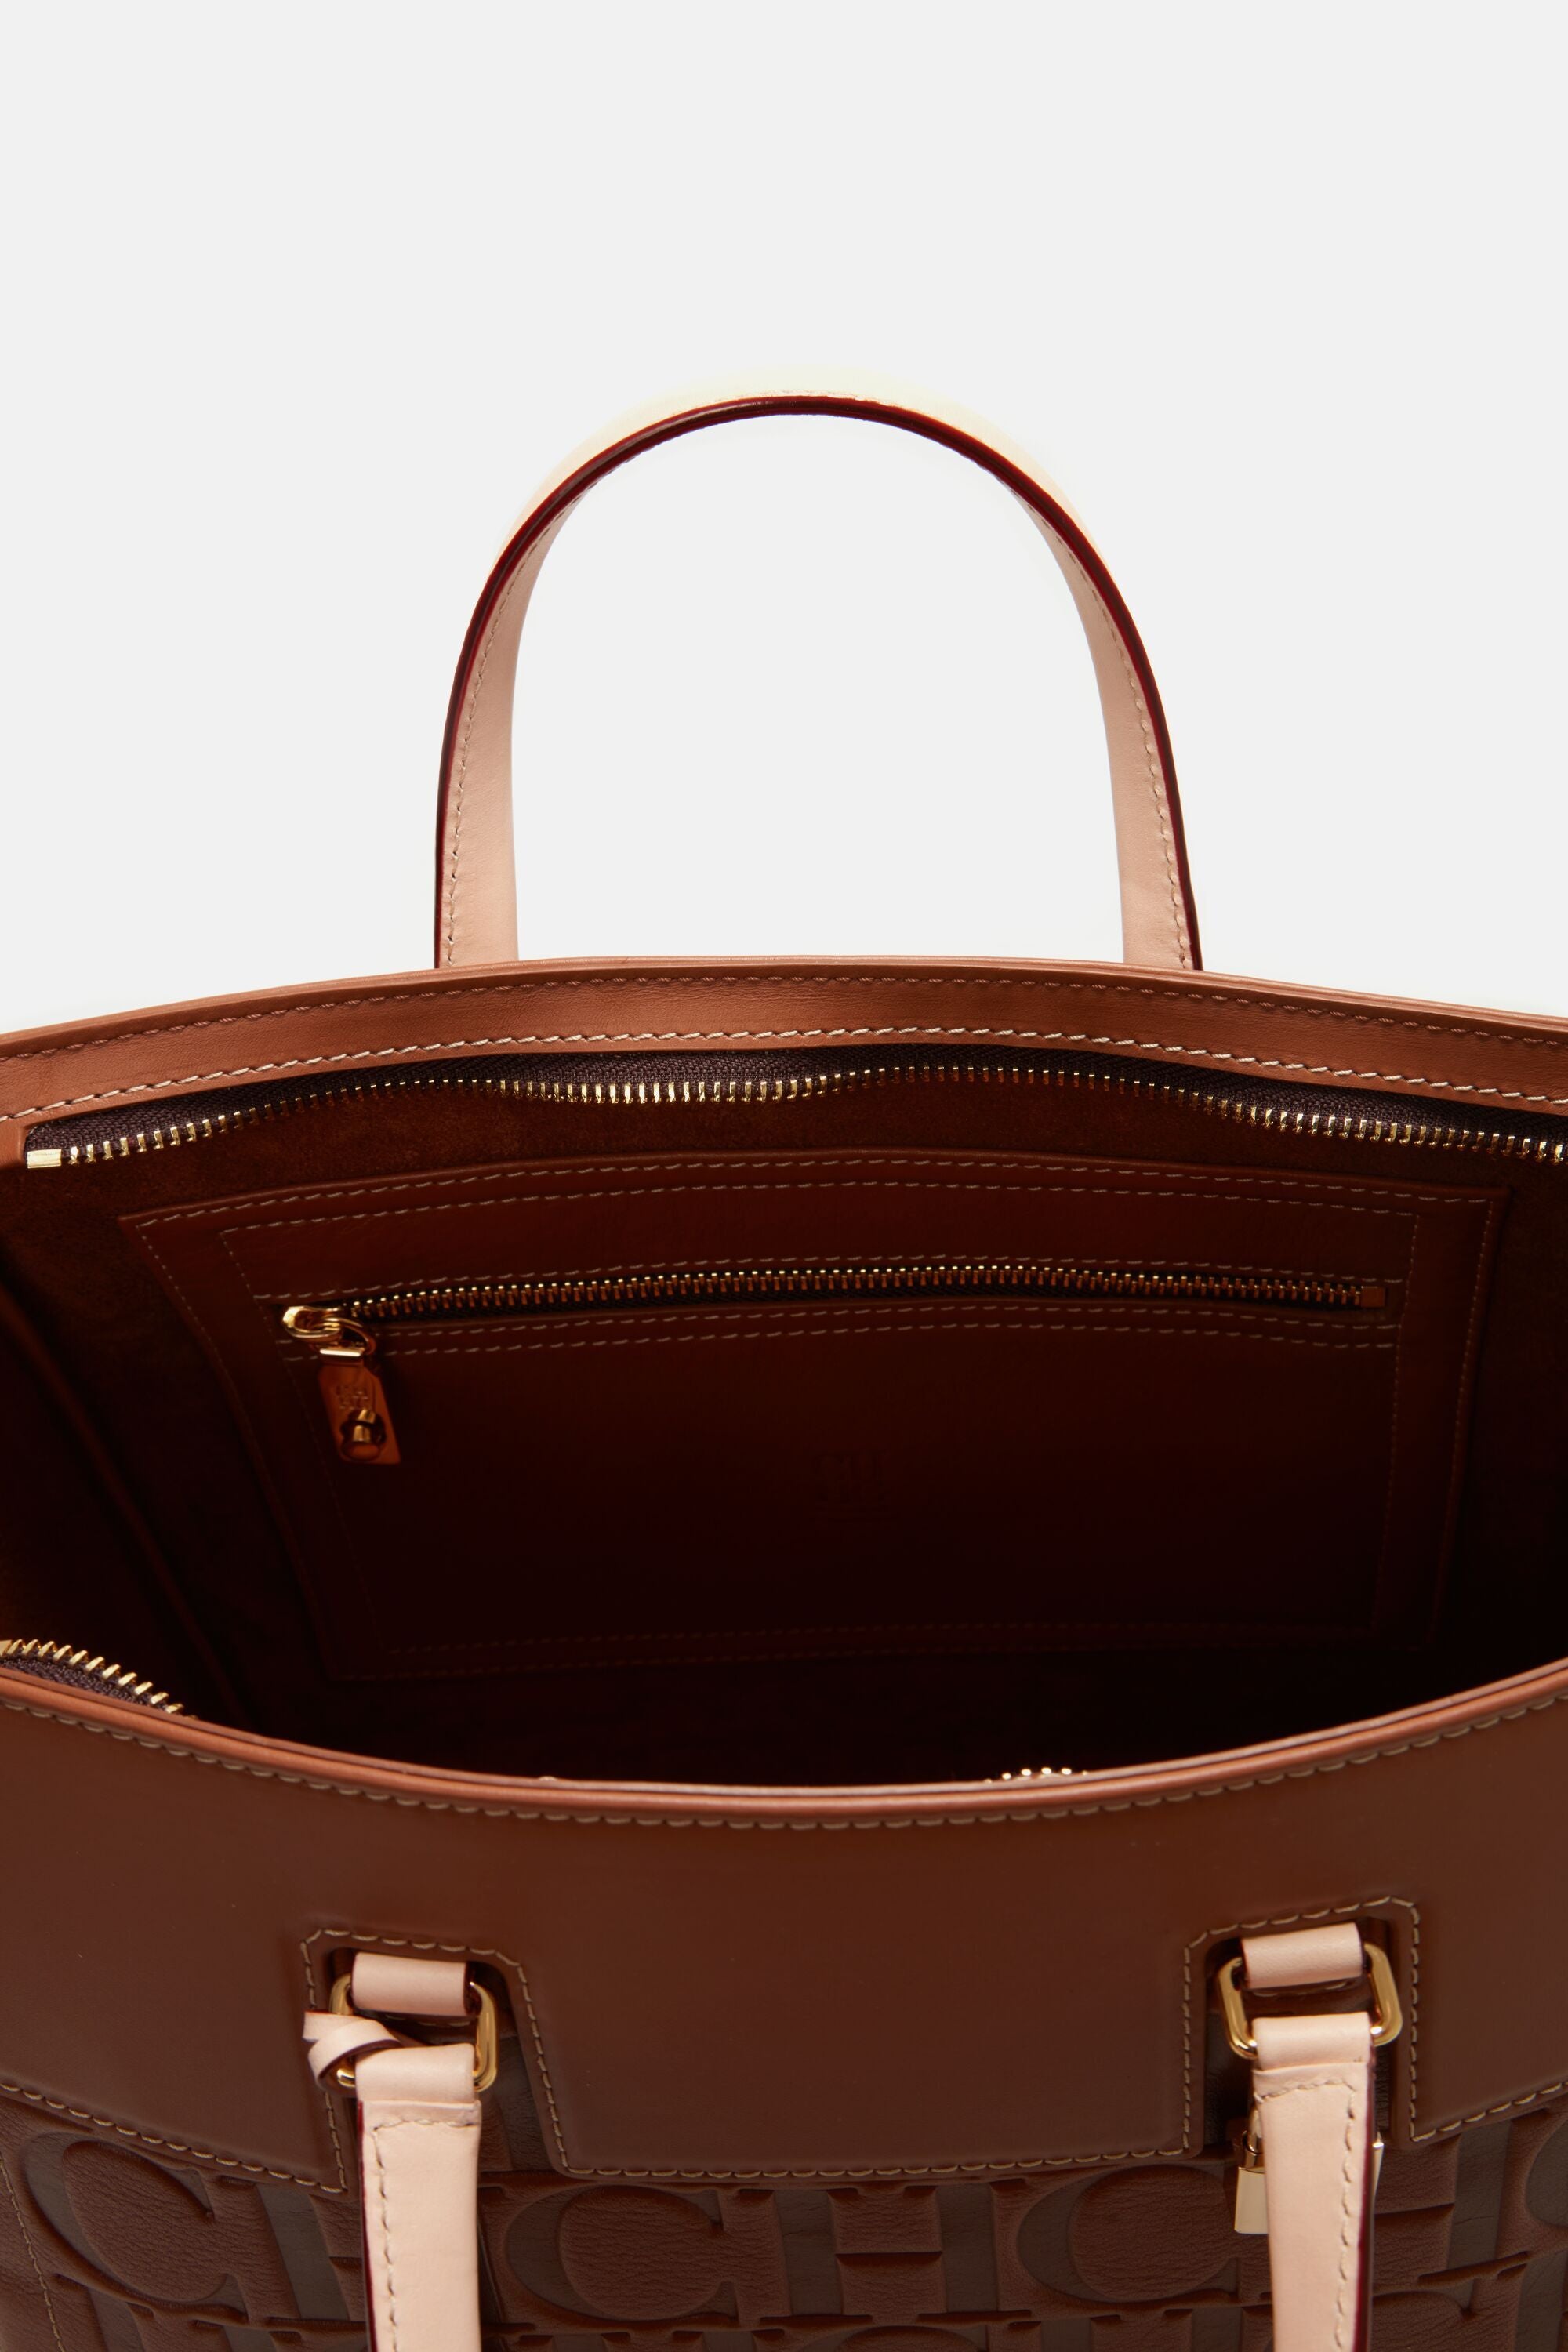 CH Carolina Herrera Vendome Bag - Brown Handle Bags, Handbags - WC320314